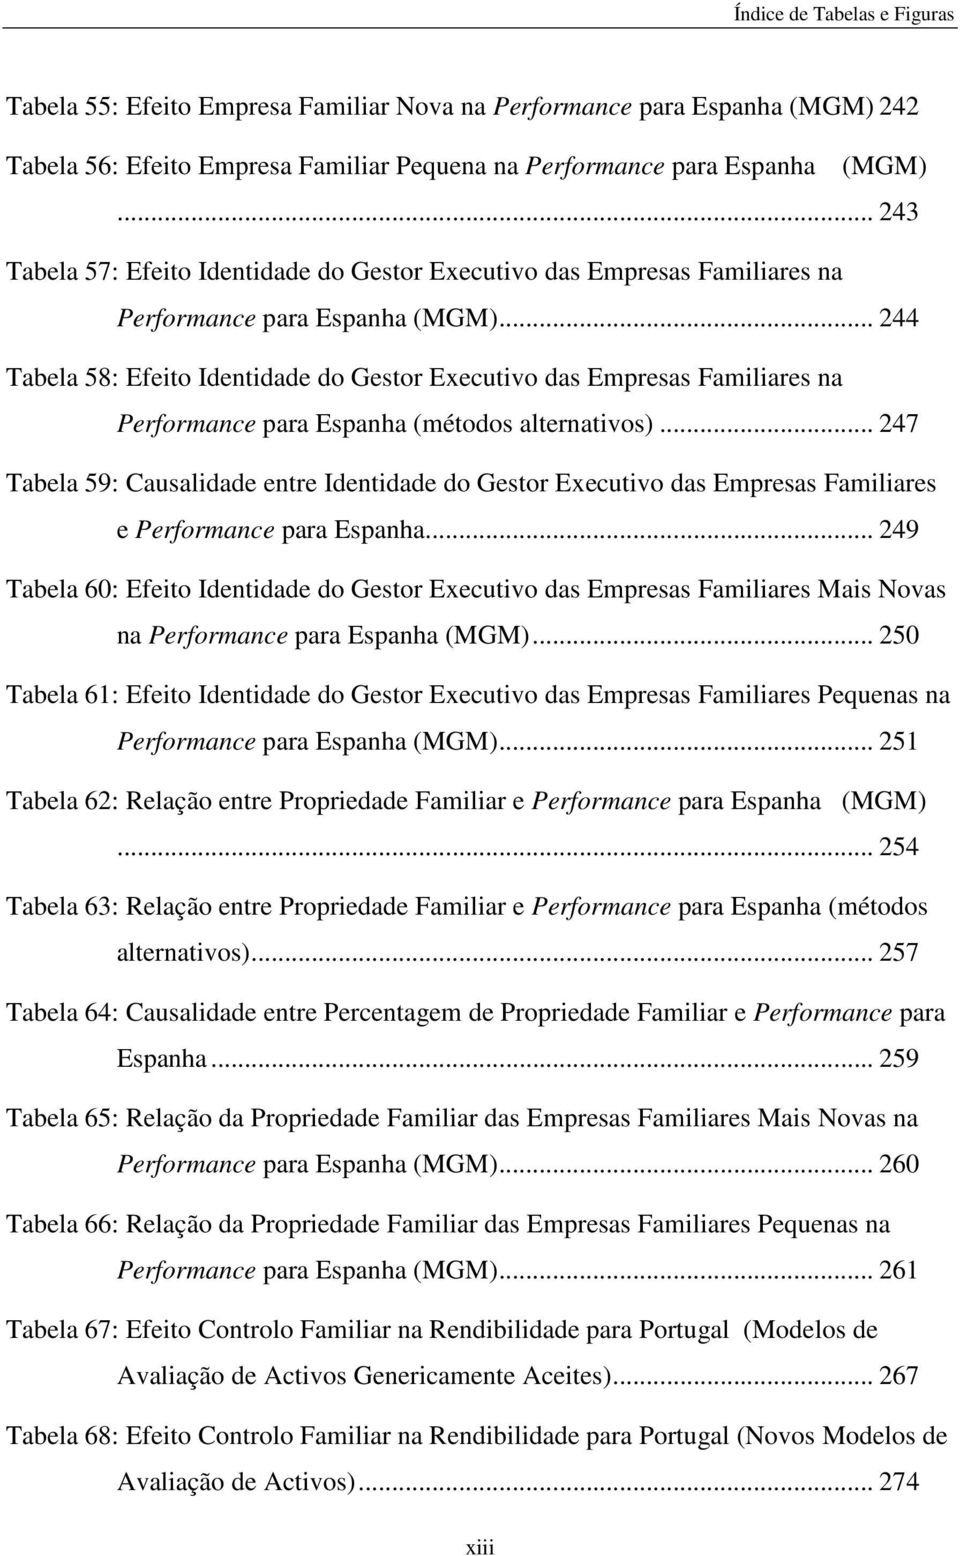 .. 244 Tabela 58: Efeito Identidade do Gestor Executivo das Empresas Familiares na Performance para Espanha (métodos alternativos).